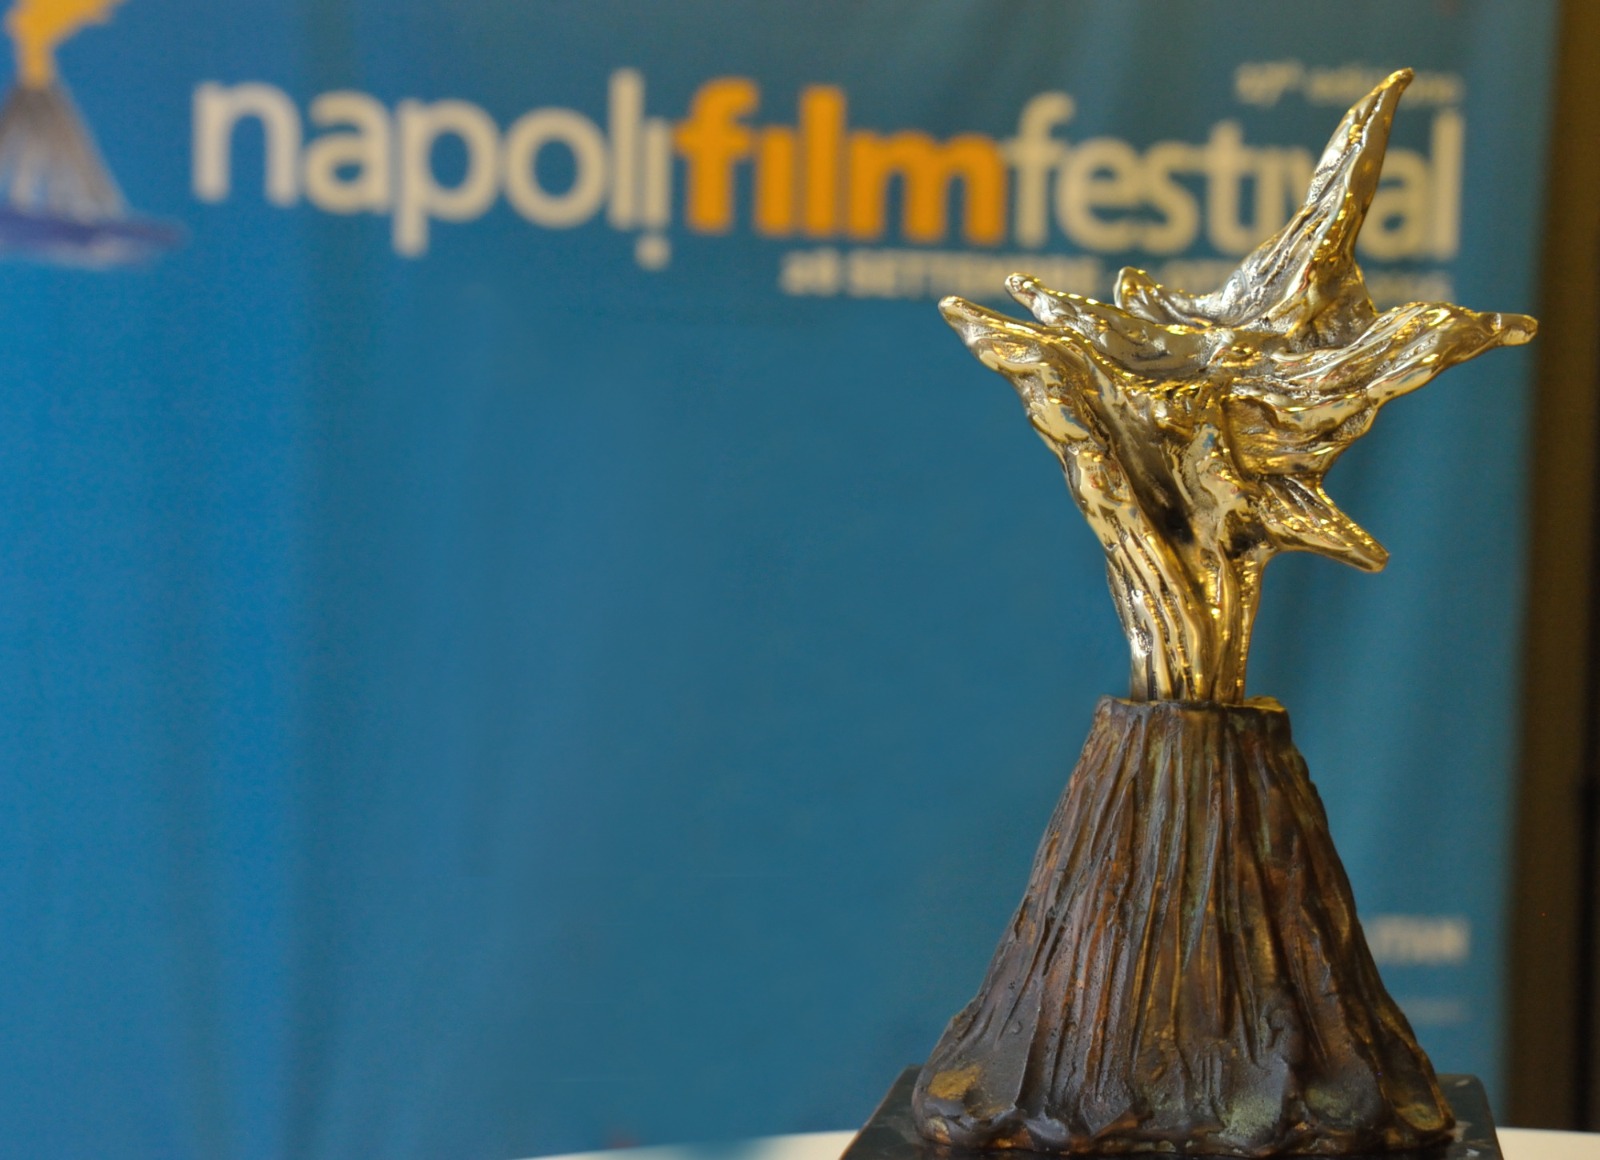 Napoli Film Festival, 28 le opere in concorso nella 23a edizione